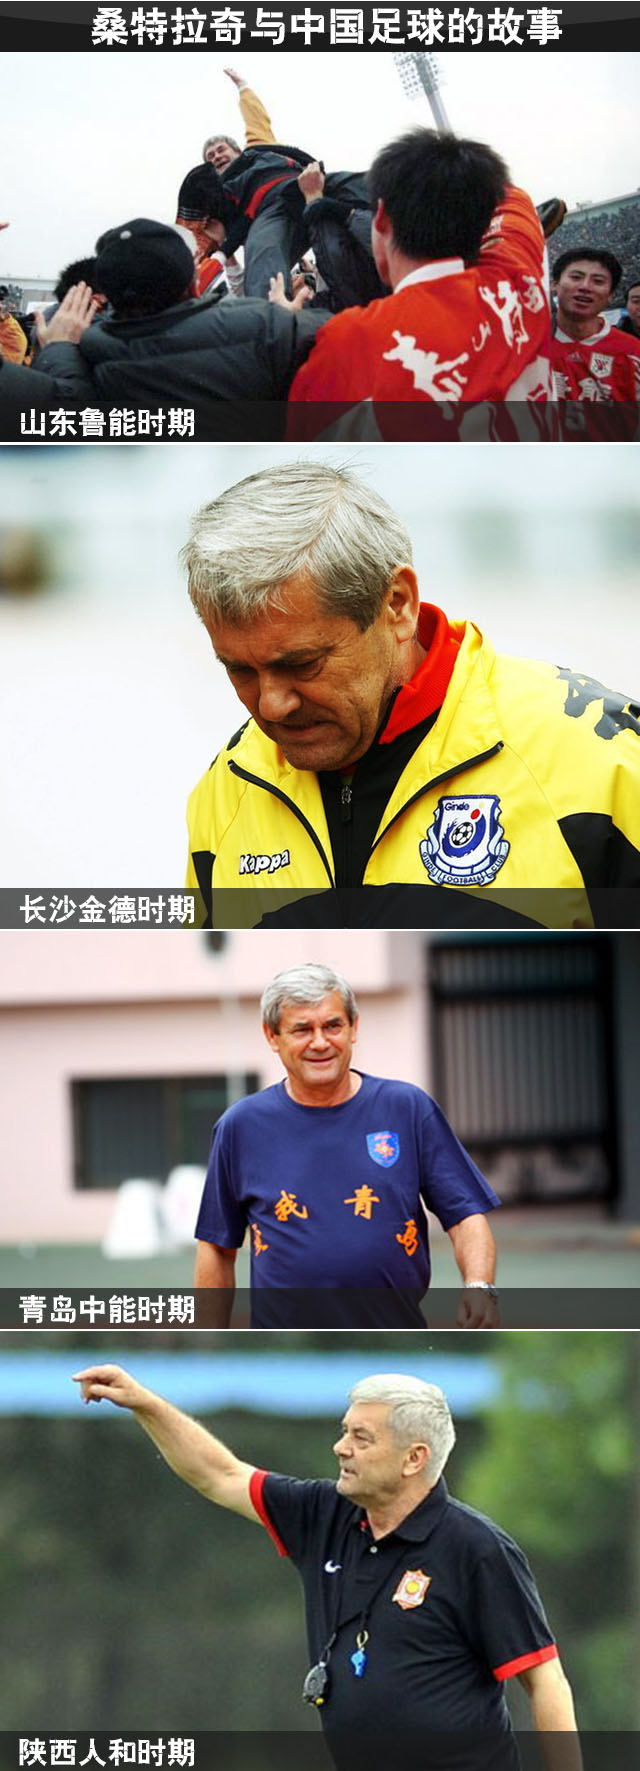 中国足球老朋友 鲁能传奇教练桑特拉奇永远离开了